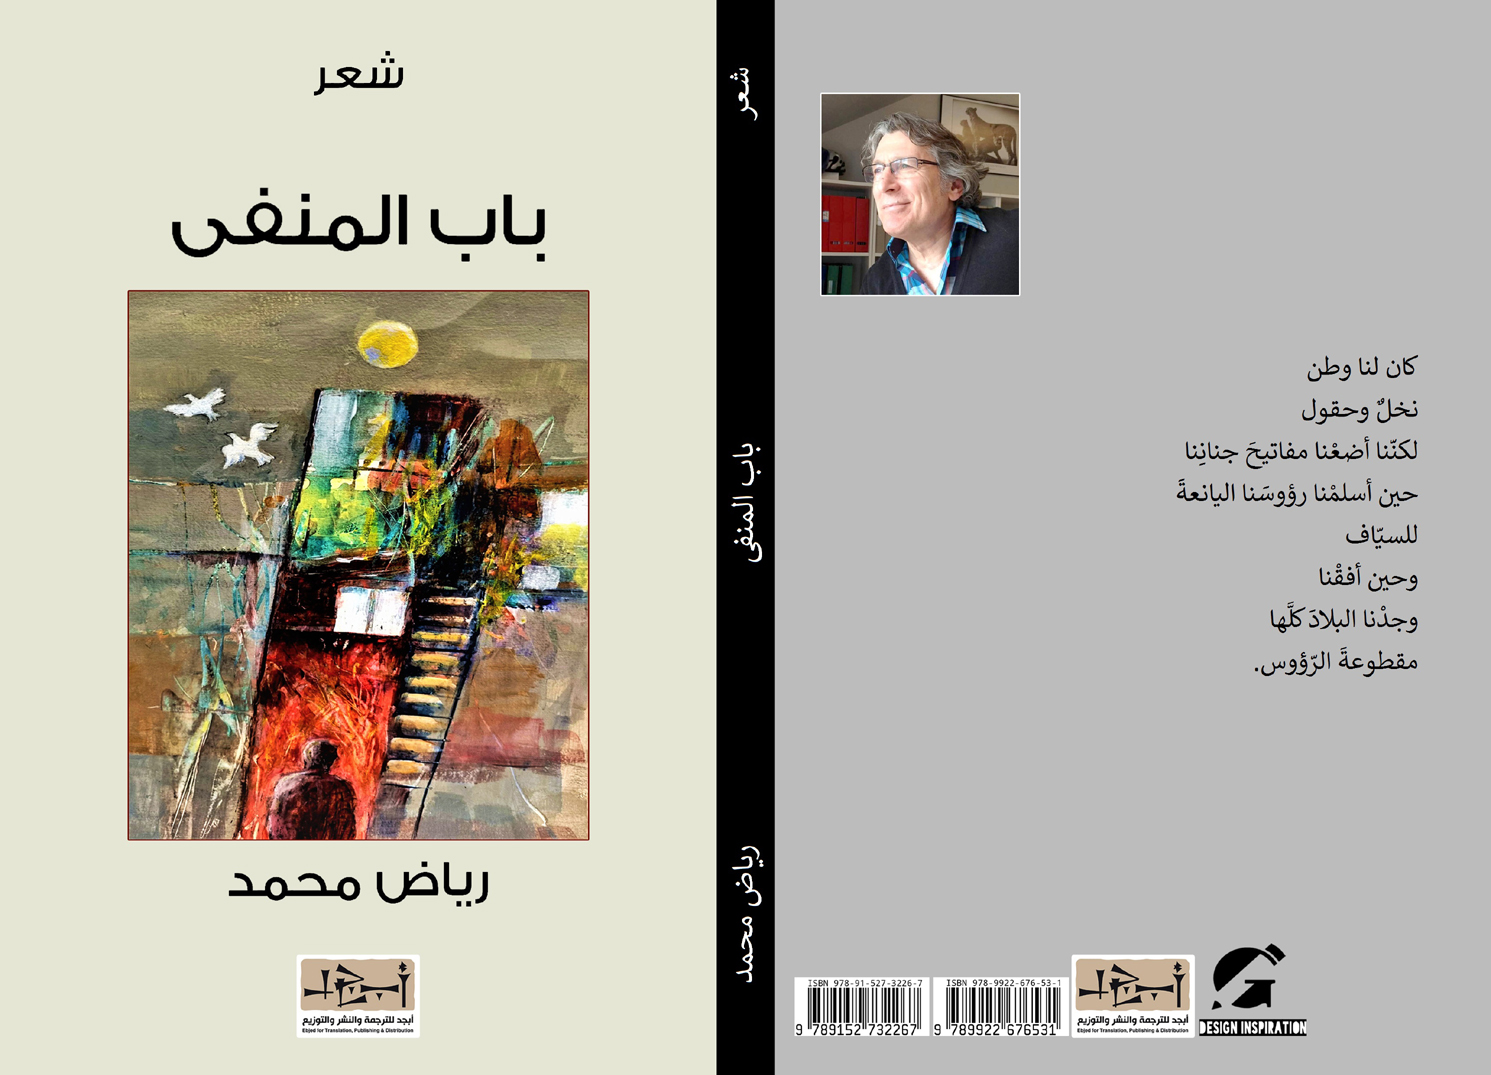 اسم الكتاب: باب المنفى تأليف: رياض محمد 